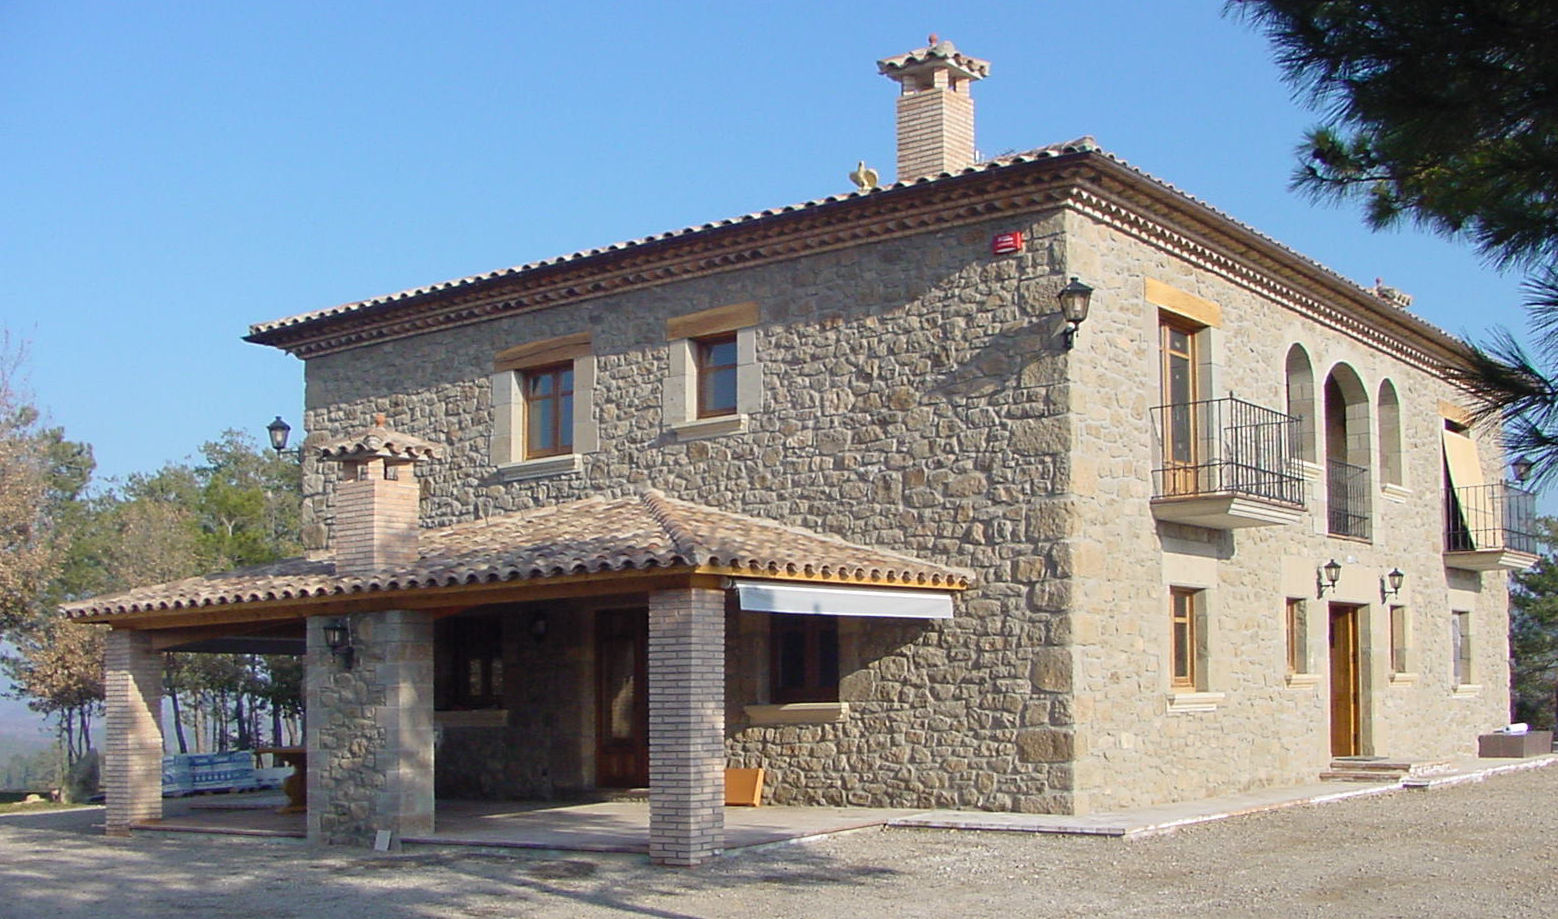 Casa de turismo rural en la Torre d'Oristà (Barcelona), ALENTORN i ALENTORN ARQUITECTES, SLP ALENTORN i ALENTORN ARQUITECTES, SLP منازل حجر